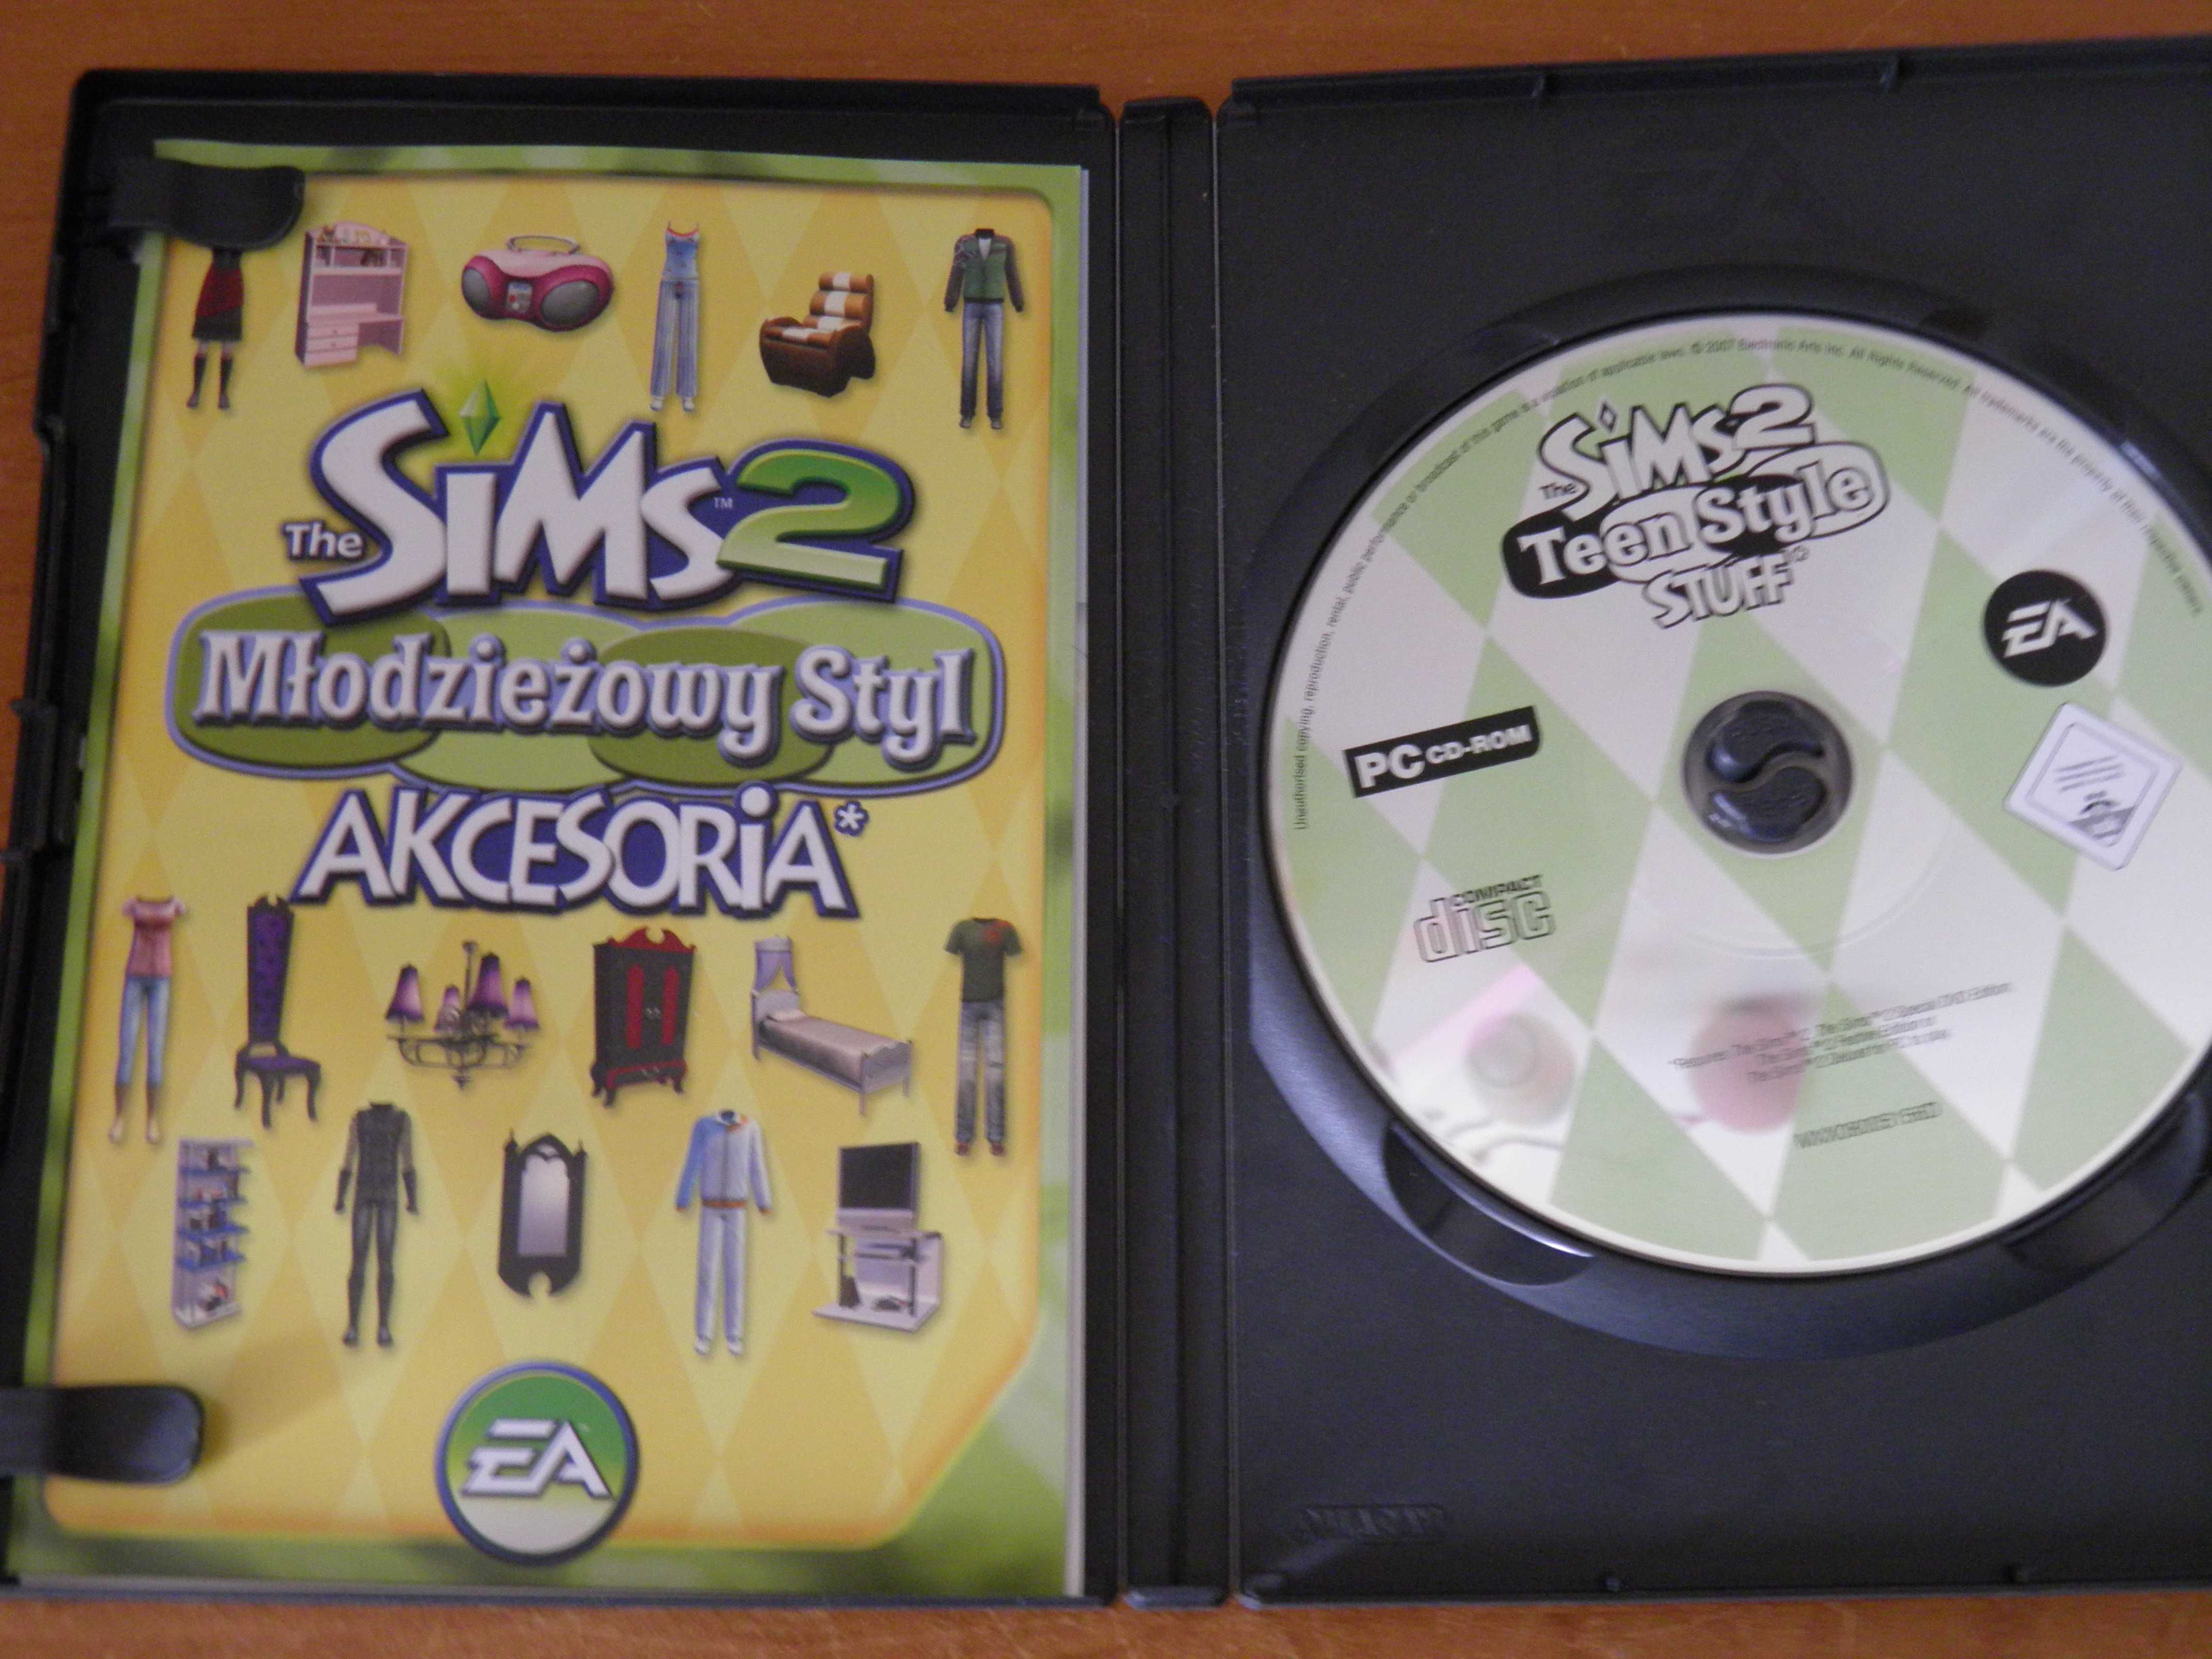 The Sims 2 Młodzieżowy Styl akcesoria PC